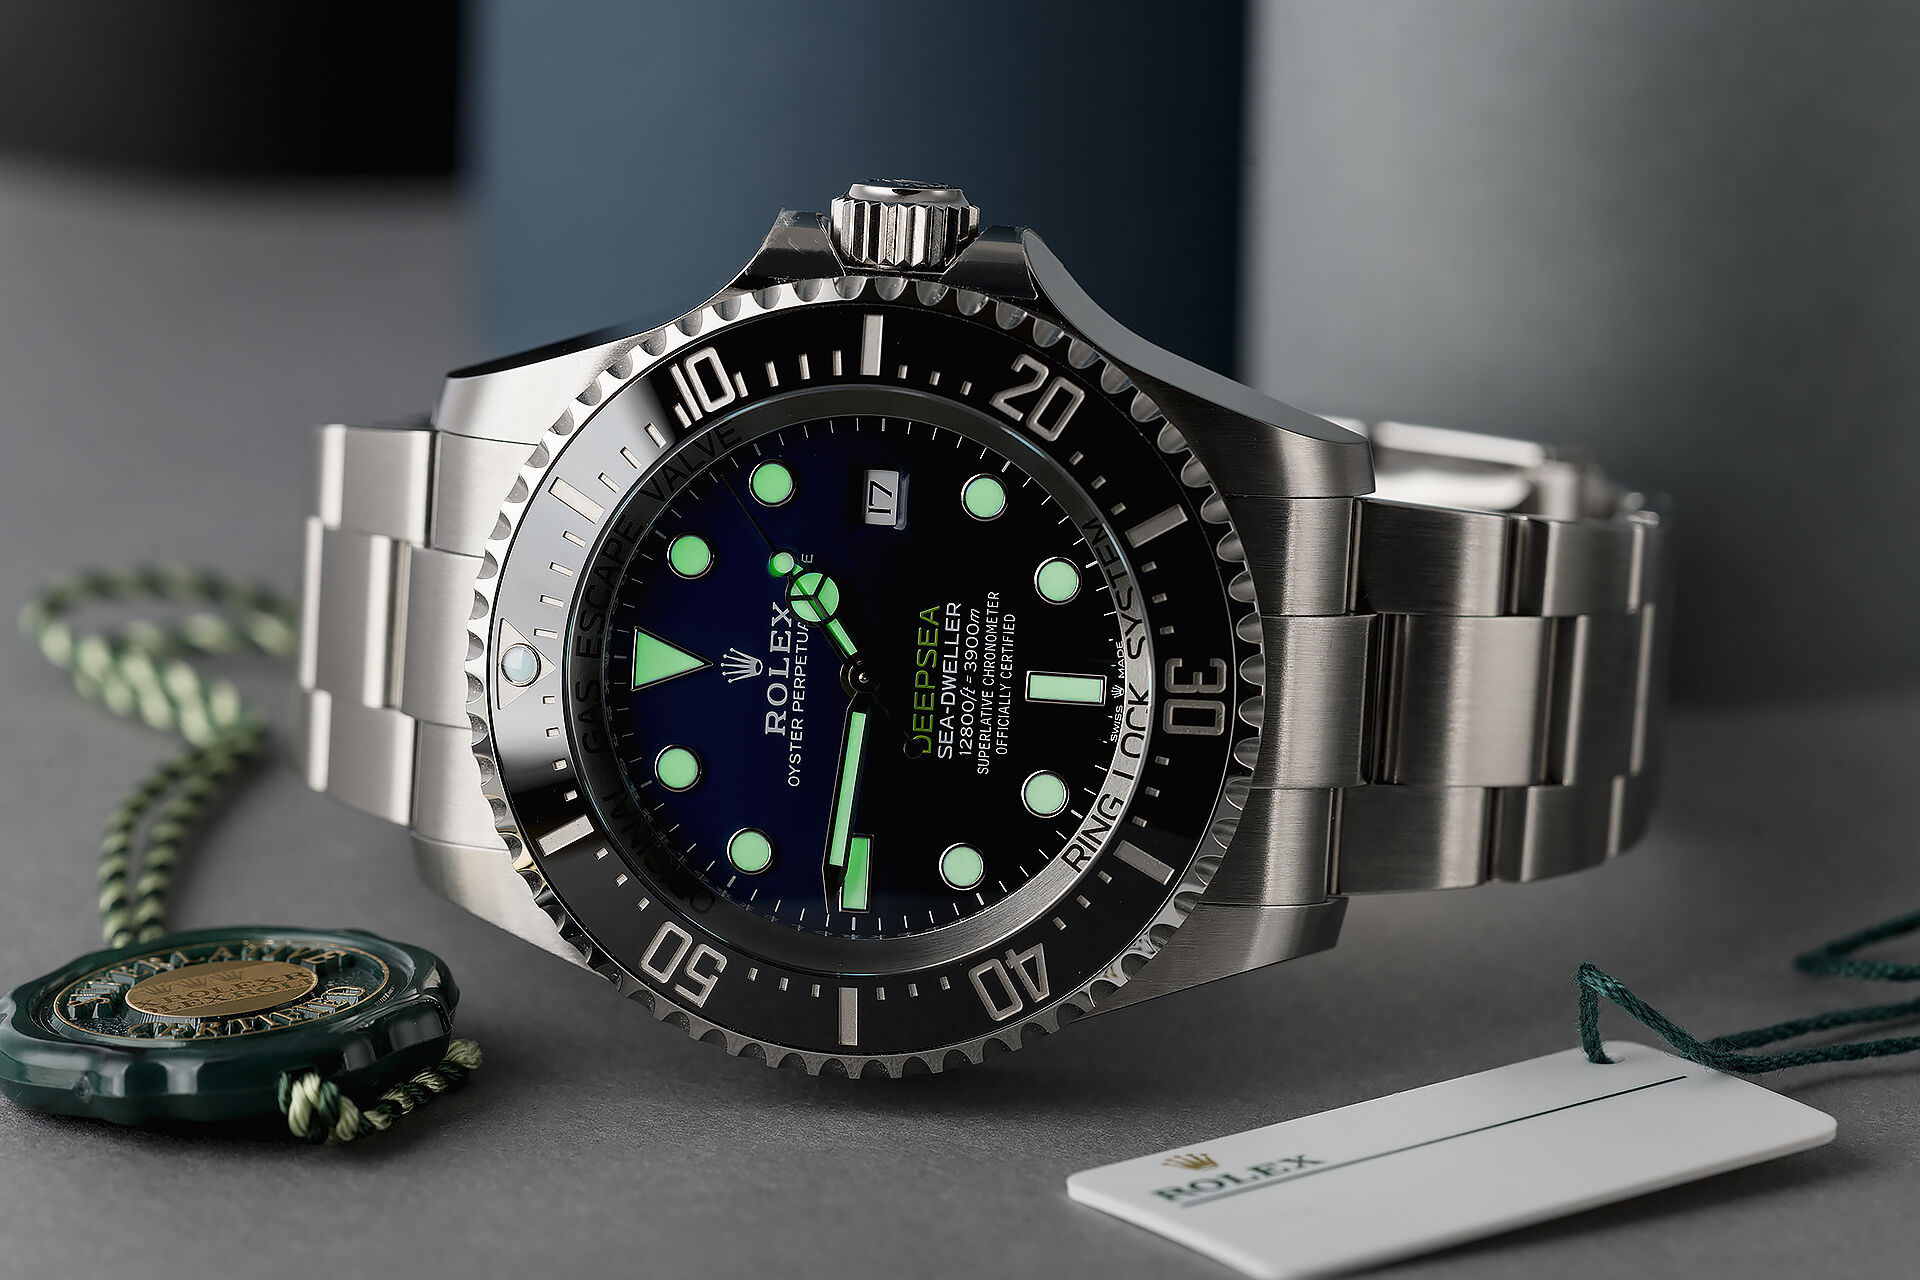 ref 126660 | Brand New - 5 Year Warranty | Rolex Deepsea D-Blue